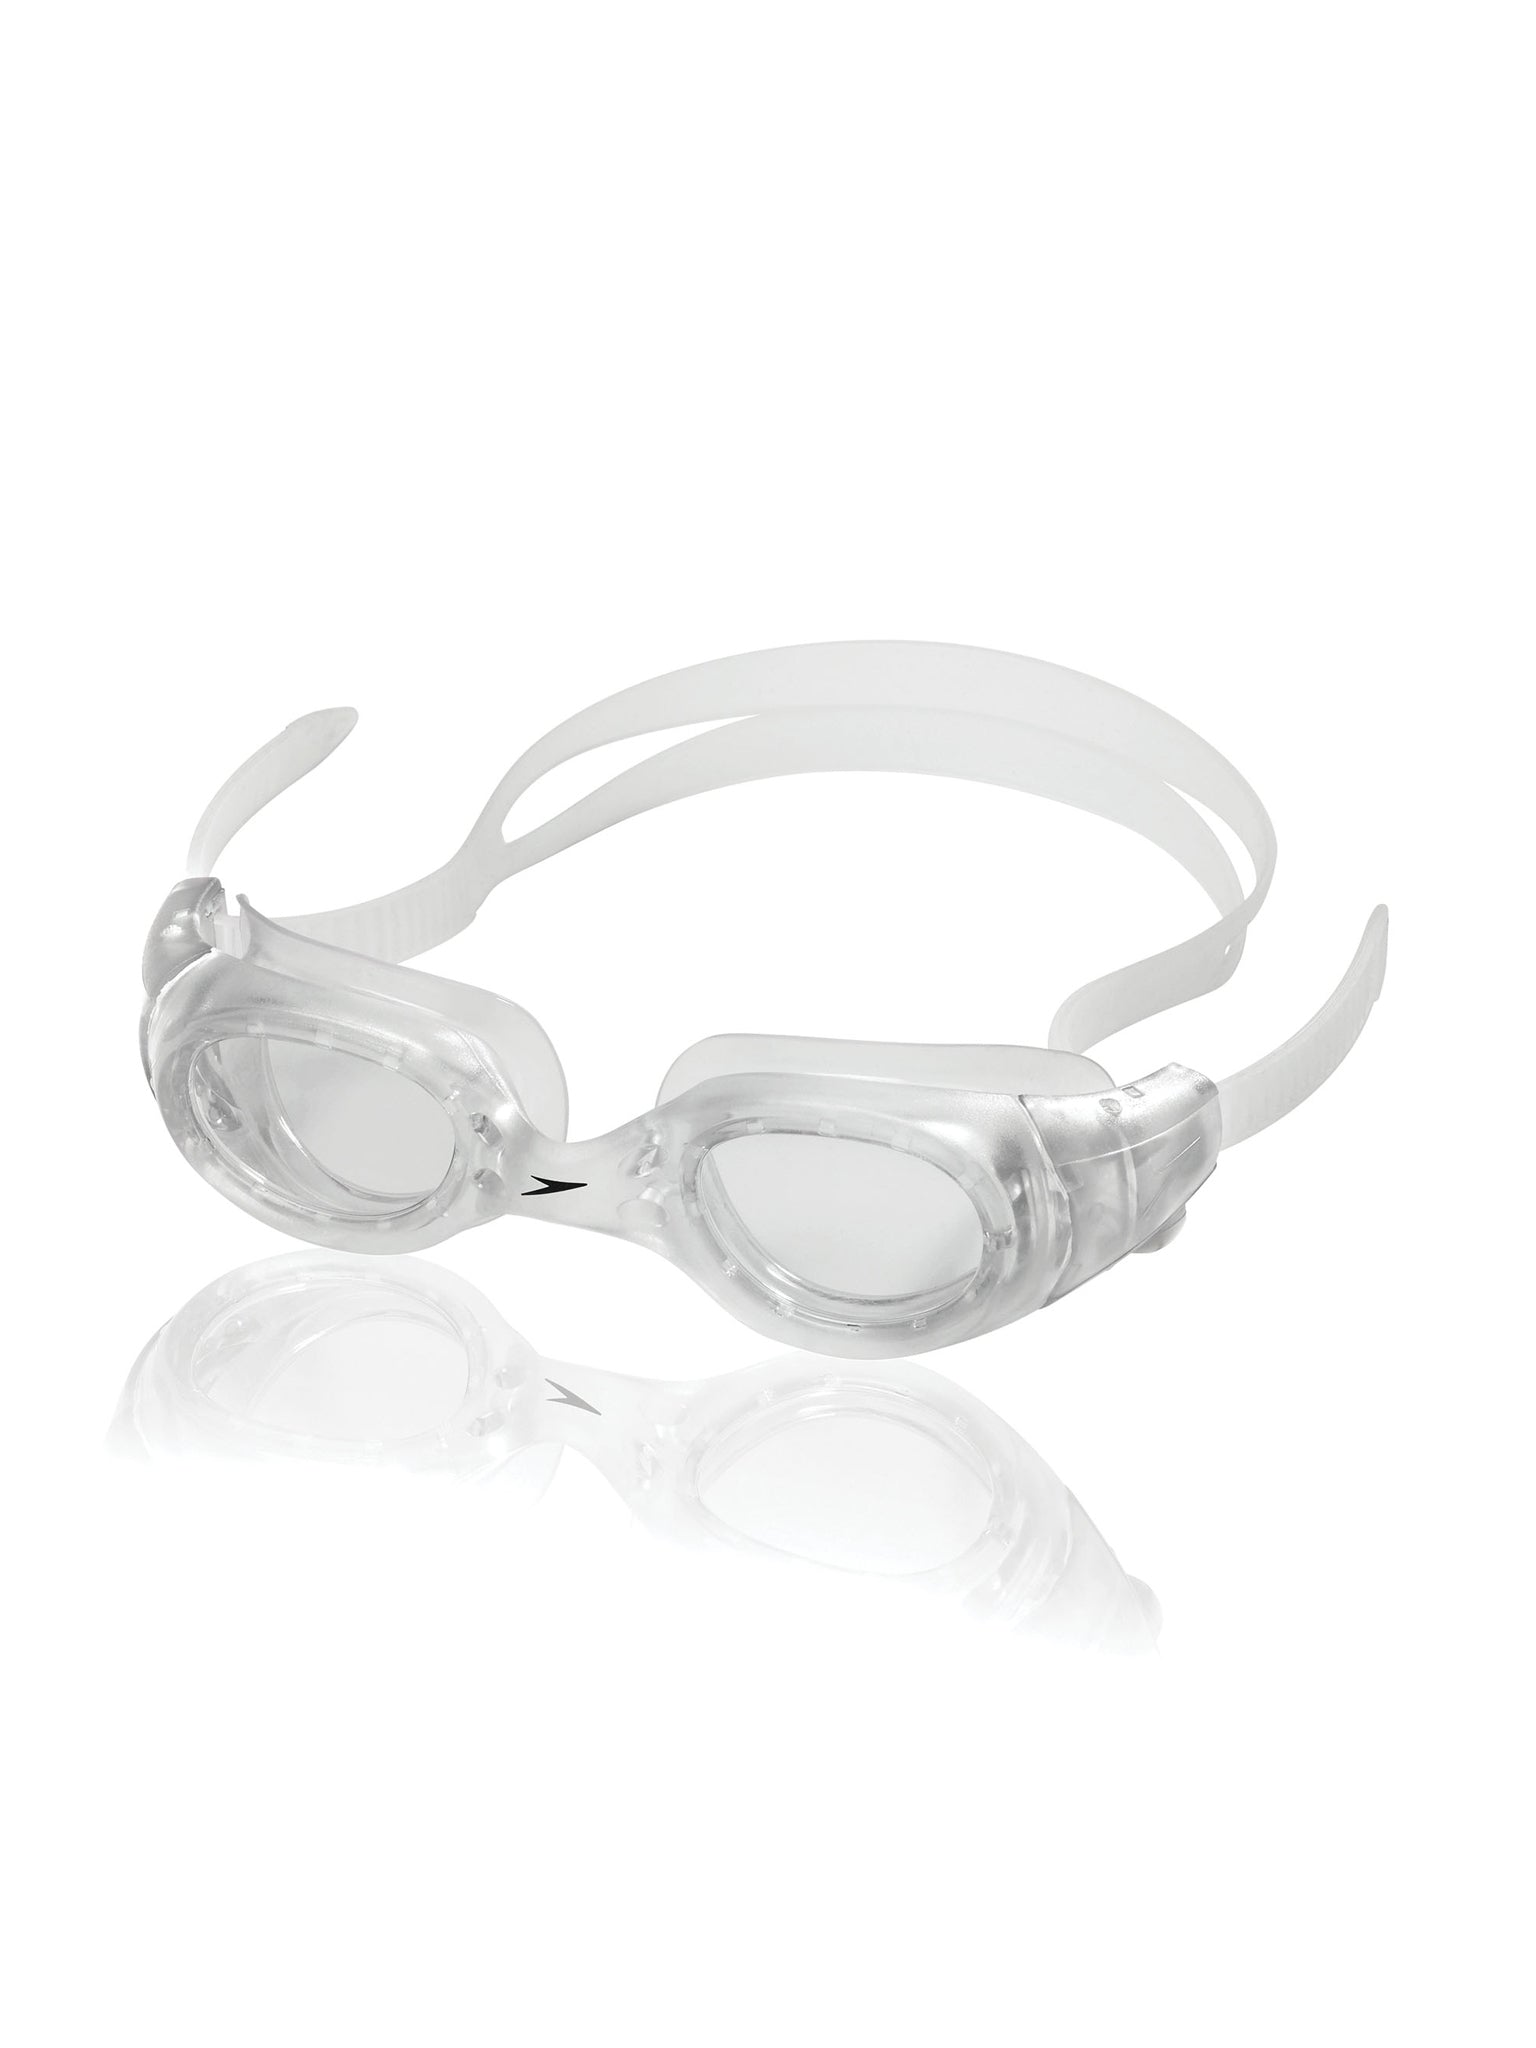 Hydrospex Classic Swim Goggle